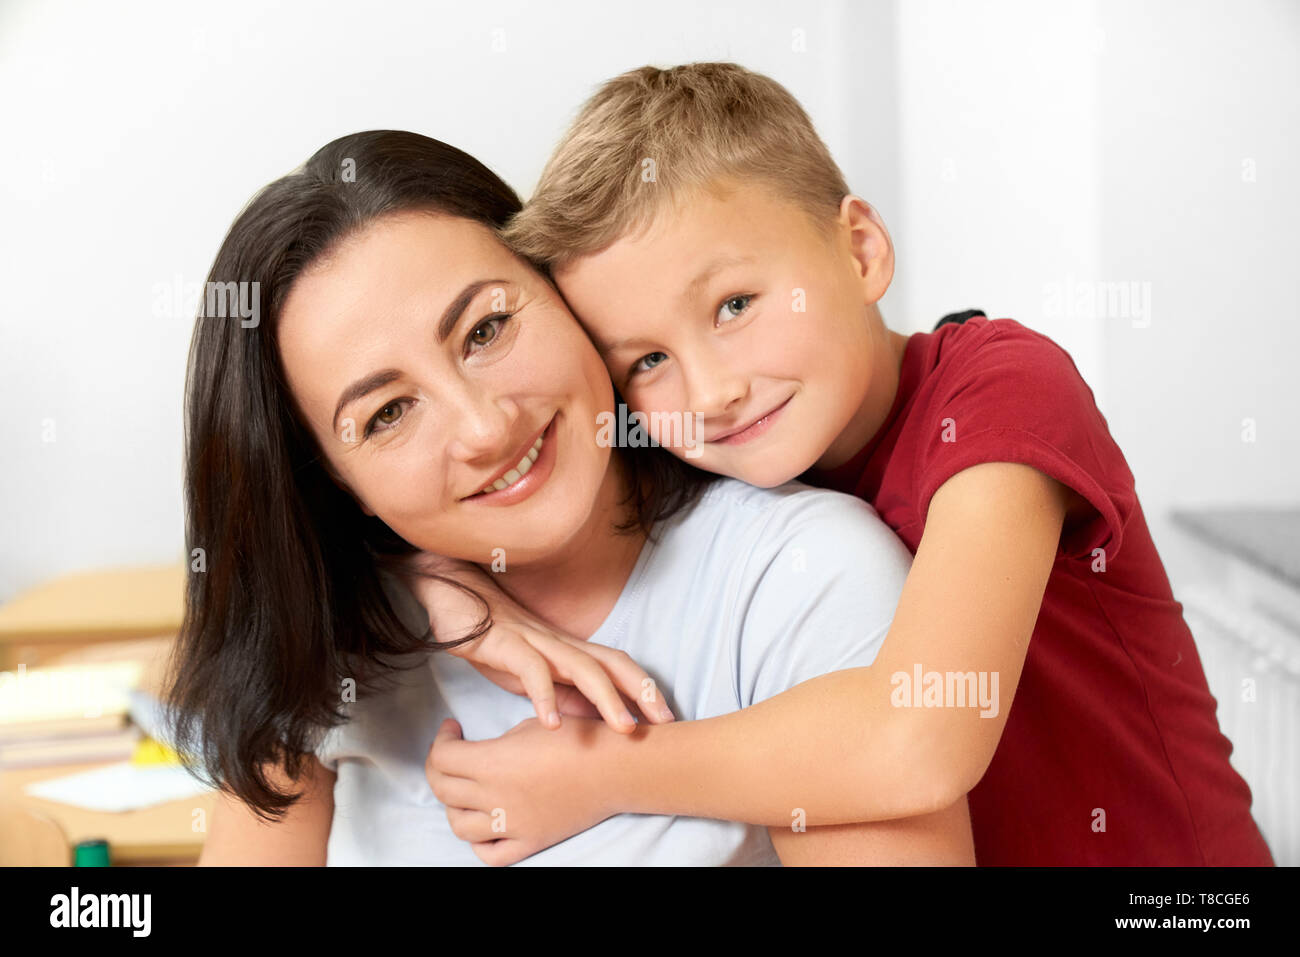 Ritratto di felice, allegro scolaro e sua madre in posa di classe. Bel bambino in piedi, abbracciando la mamma, sorridente, guardando la fotocamera. Concetto di famiglia. Foto Stock